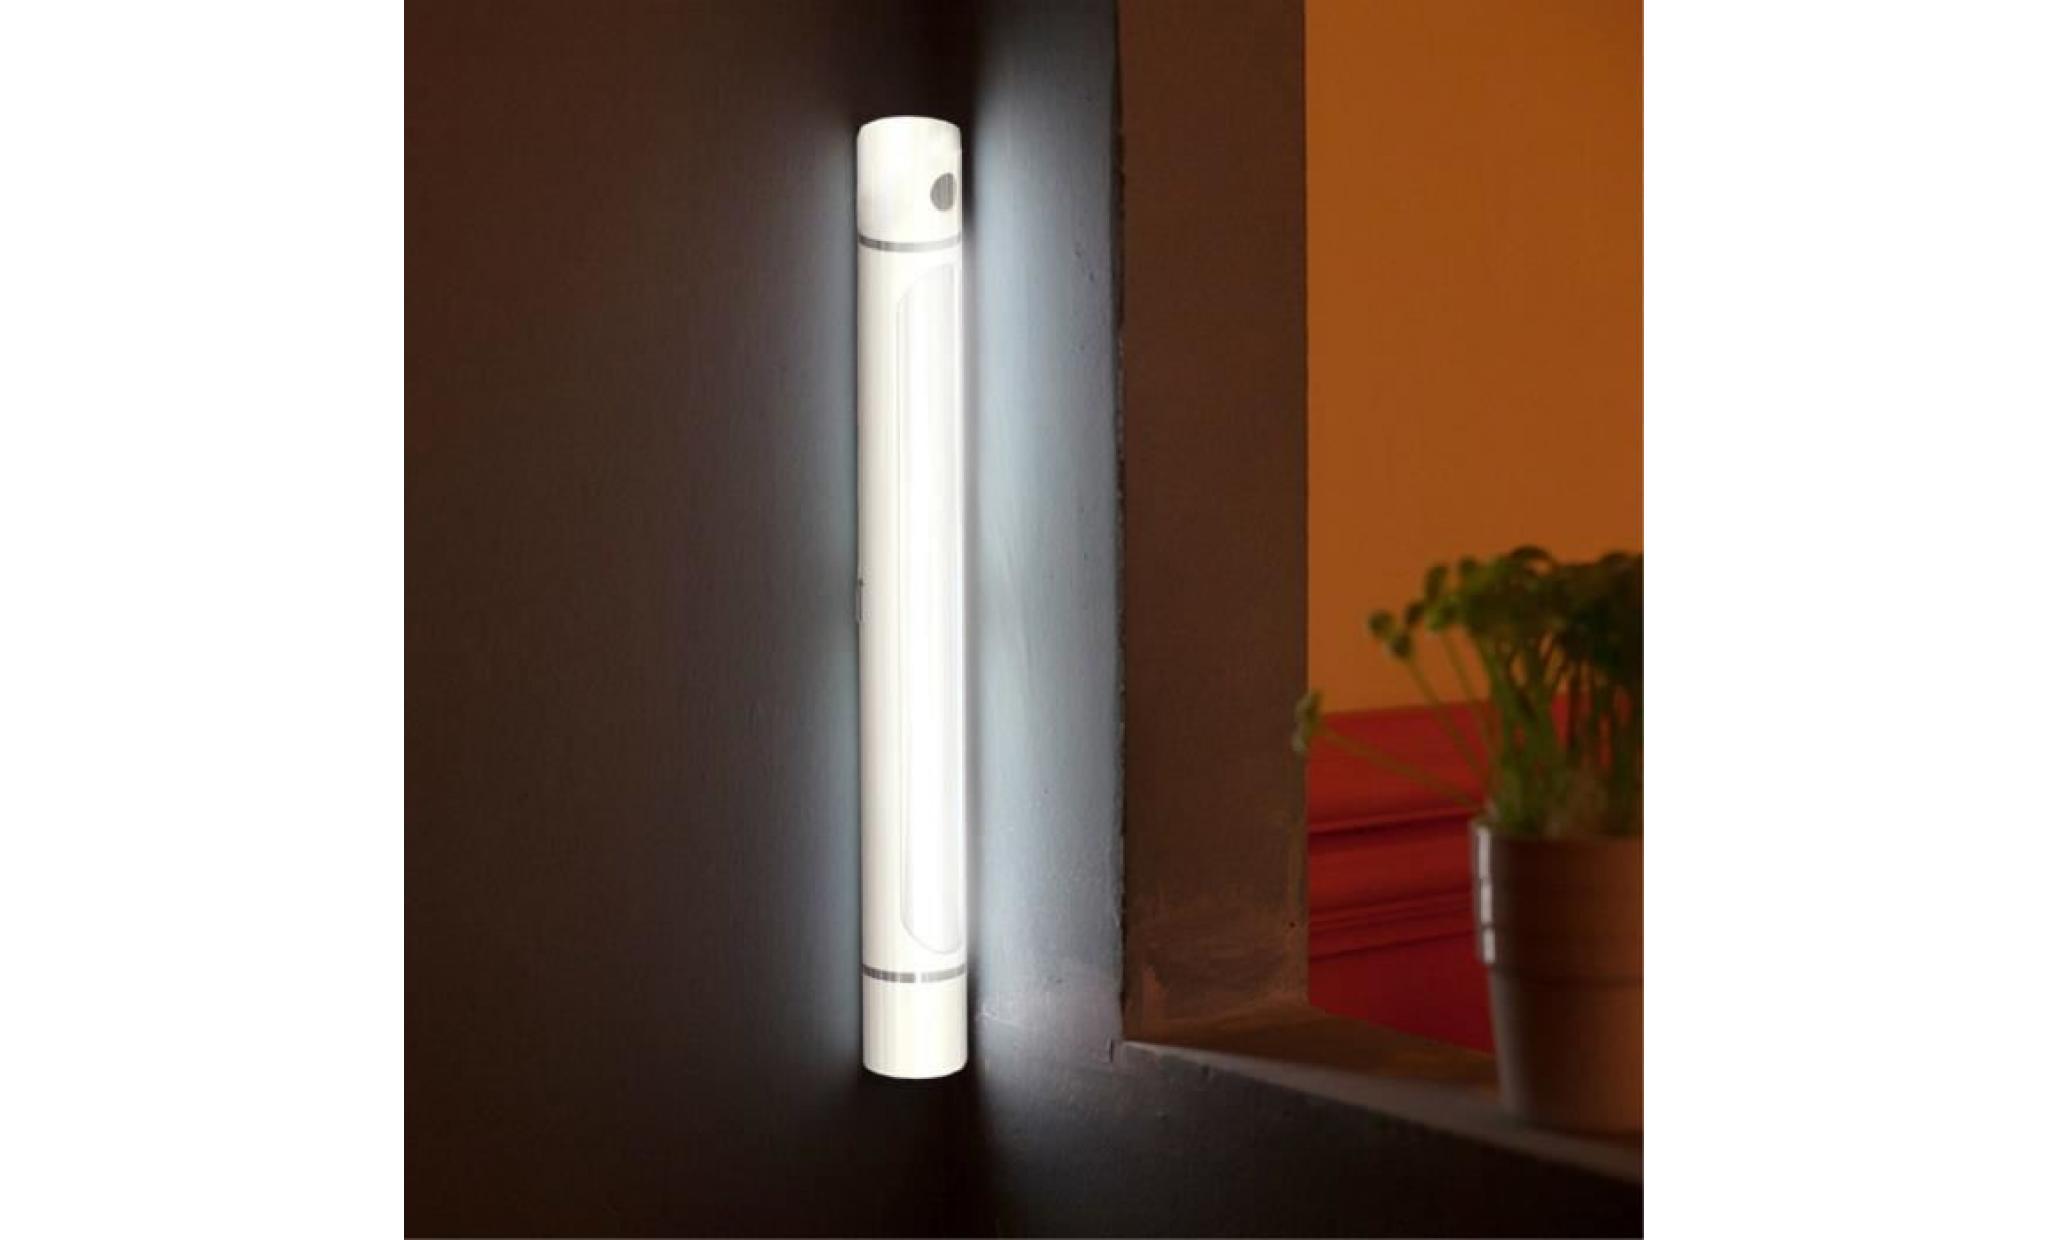 27cm sous l'armoire armoire étagère lampe lumière de bande pour la maison cuisine wall light @zoozipo1932